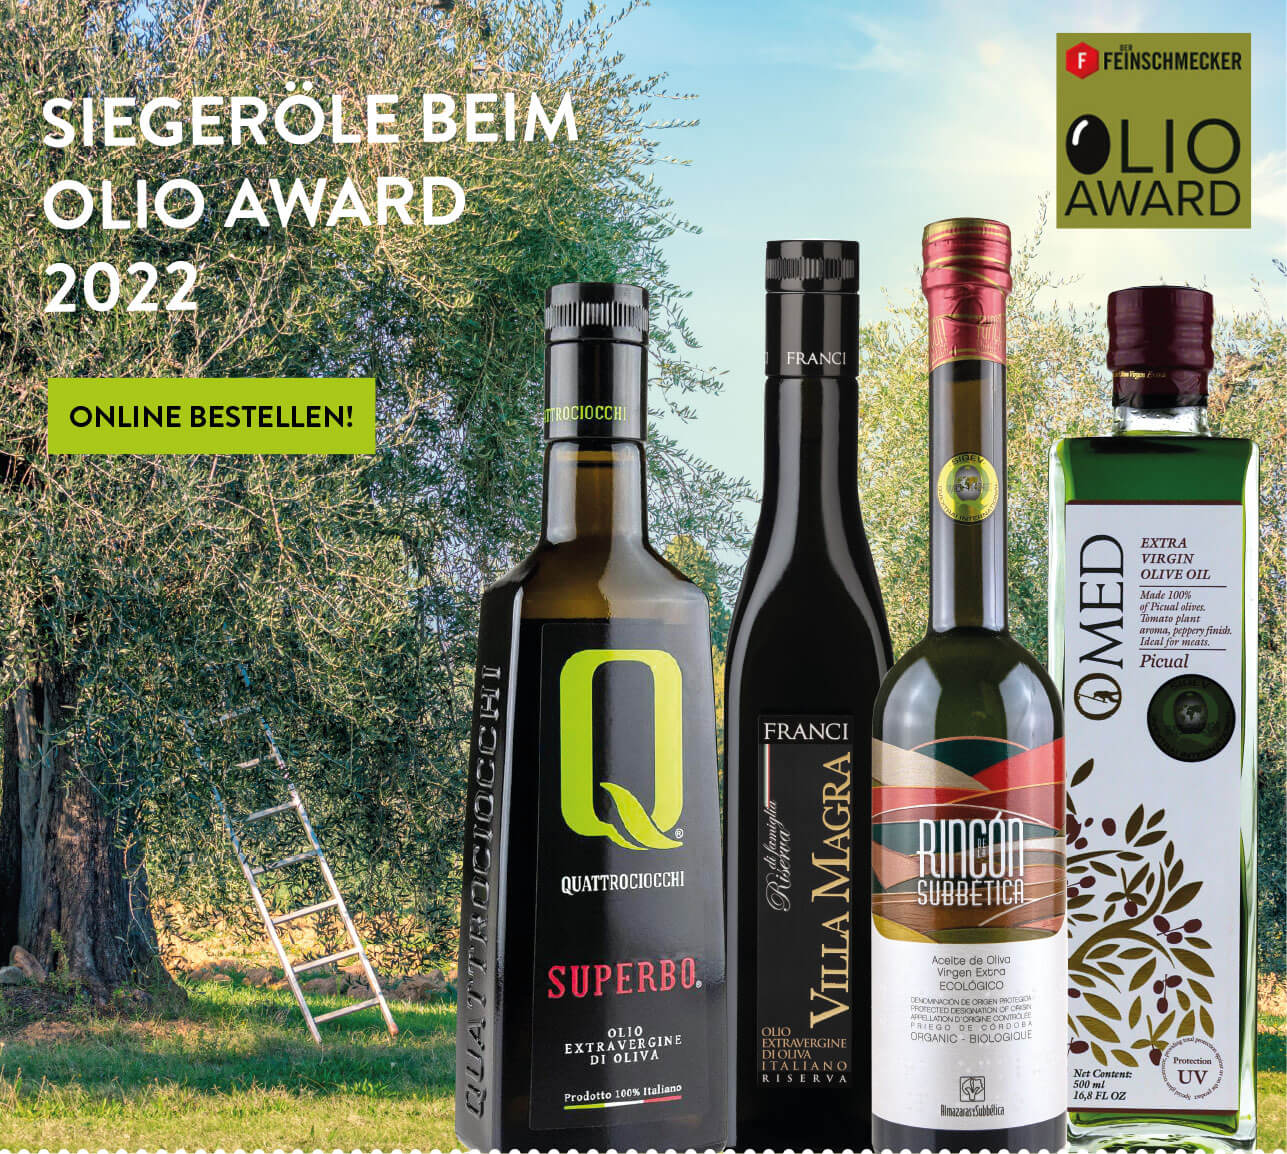 Olio Award 2022 Siegeröle